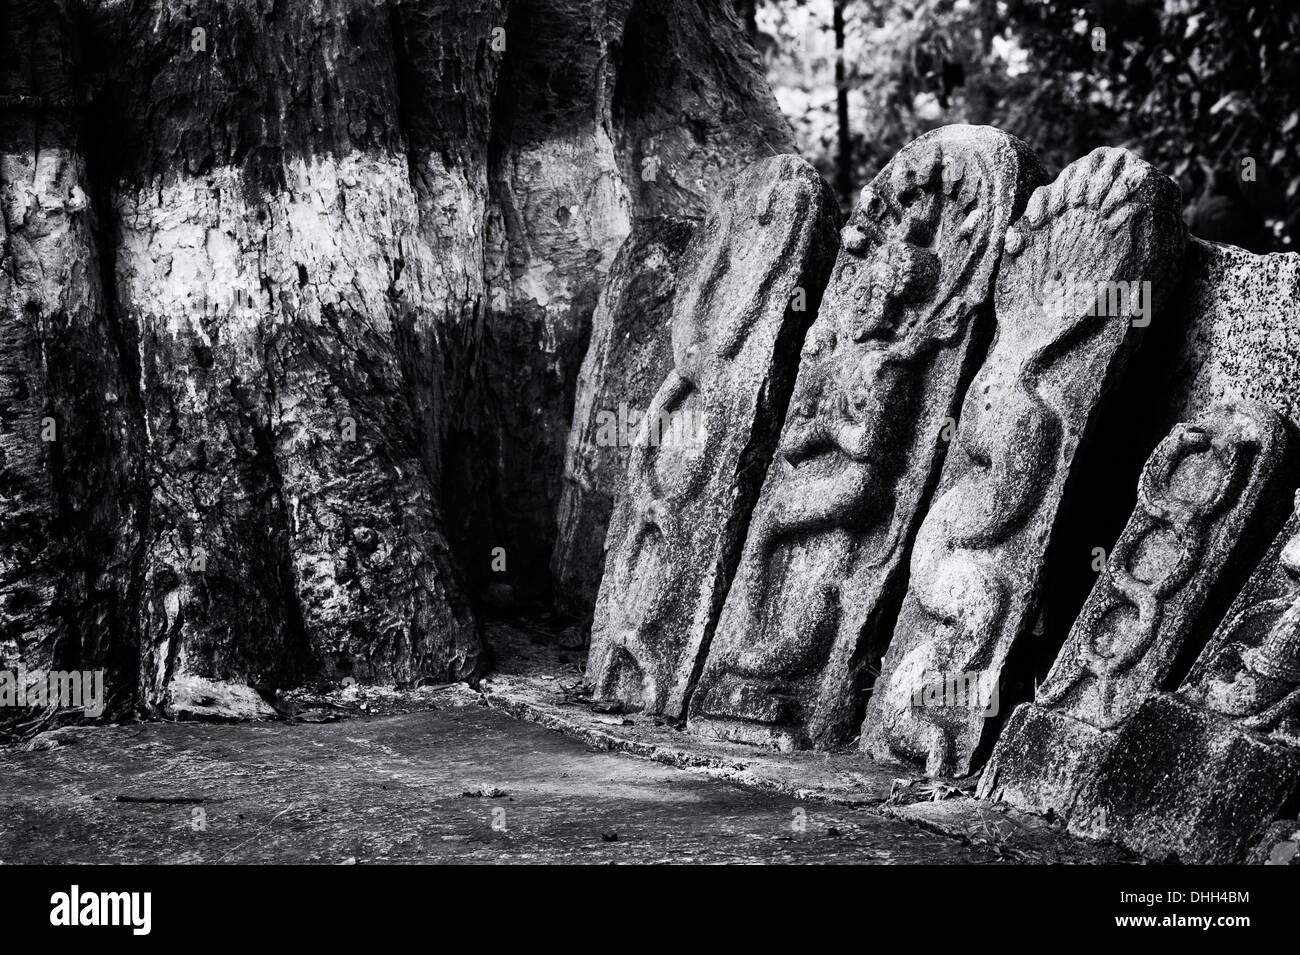 Altare indù pietre raffiguranti Indian vishnu divinità e banyan tree in un territorio rurale villaggio indiano. Andhra Pradesh, India. Foto Stock